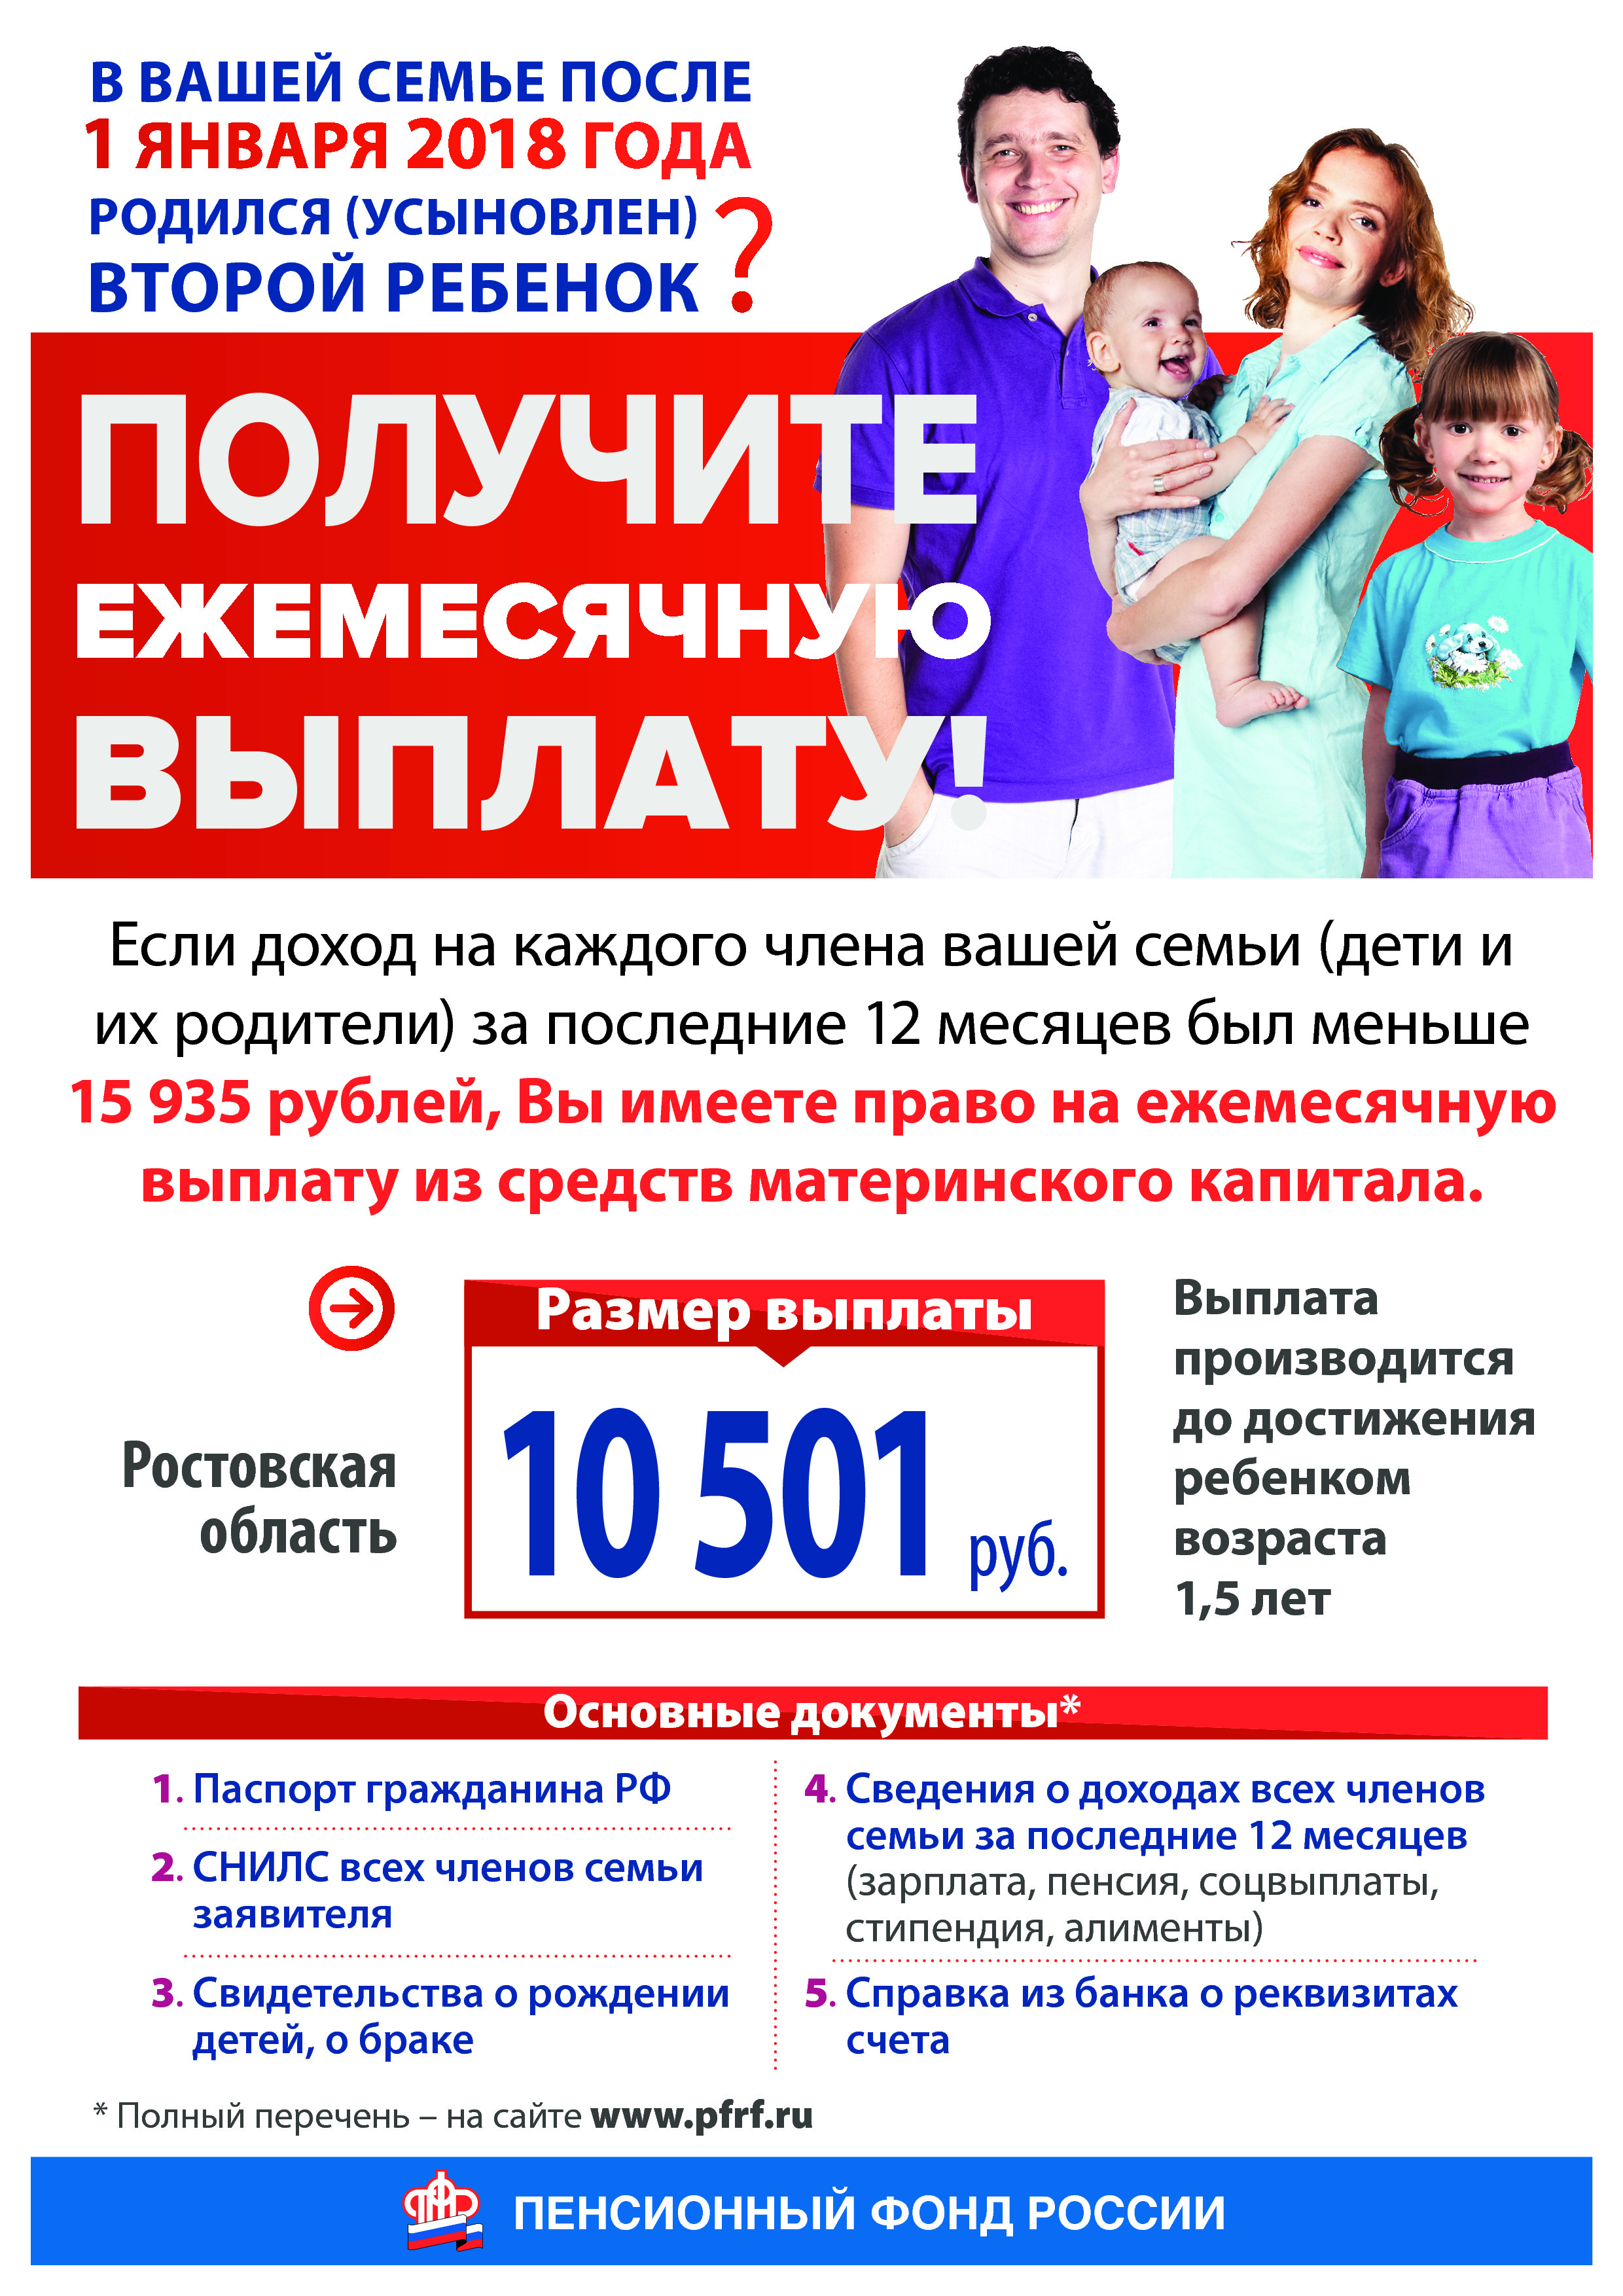 Нарушения, выявленные в Ростовских отделениях Пенсионного фонда и Фонда социального страхования 